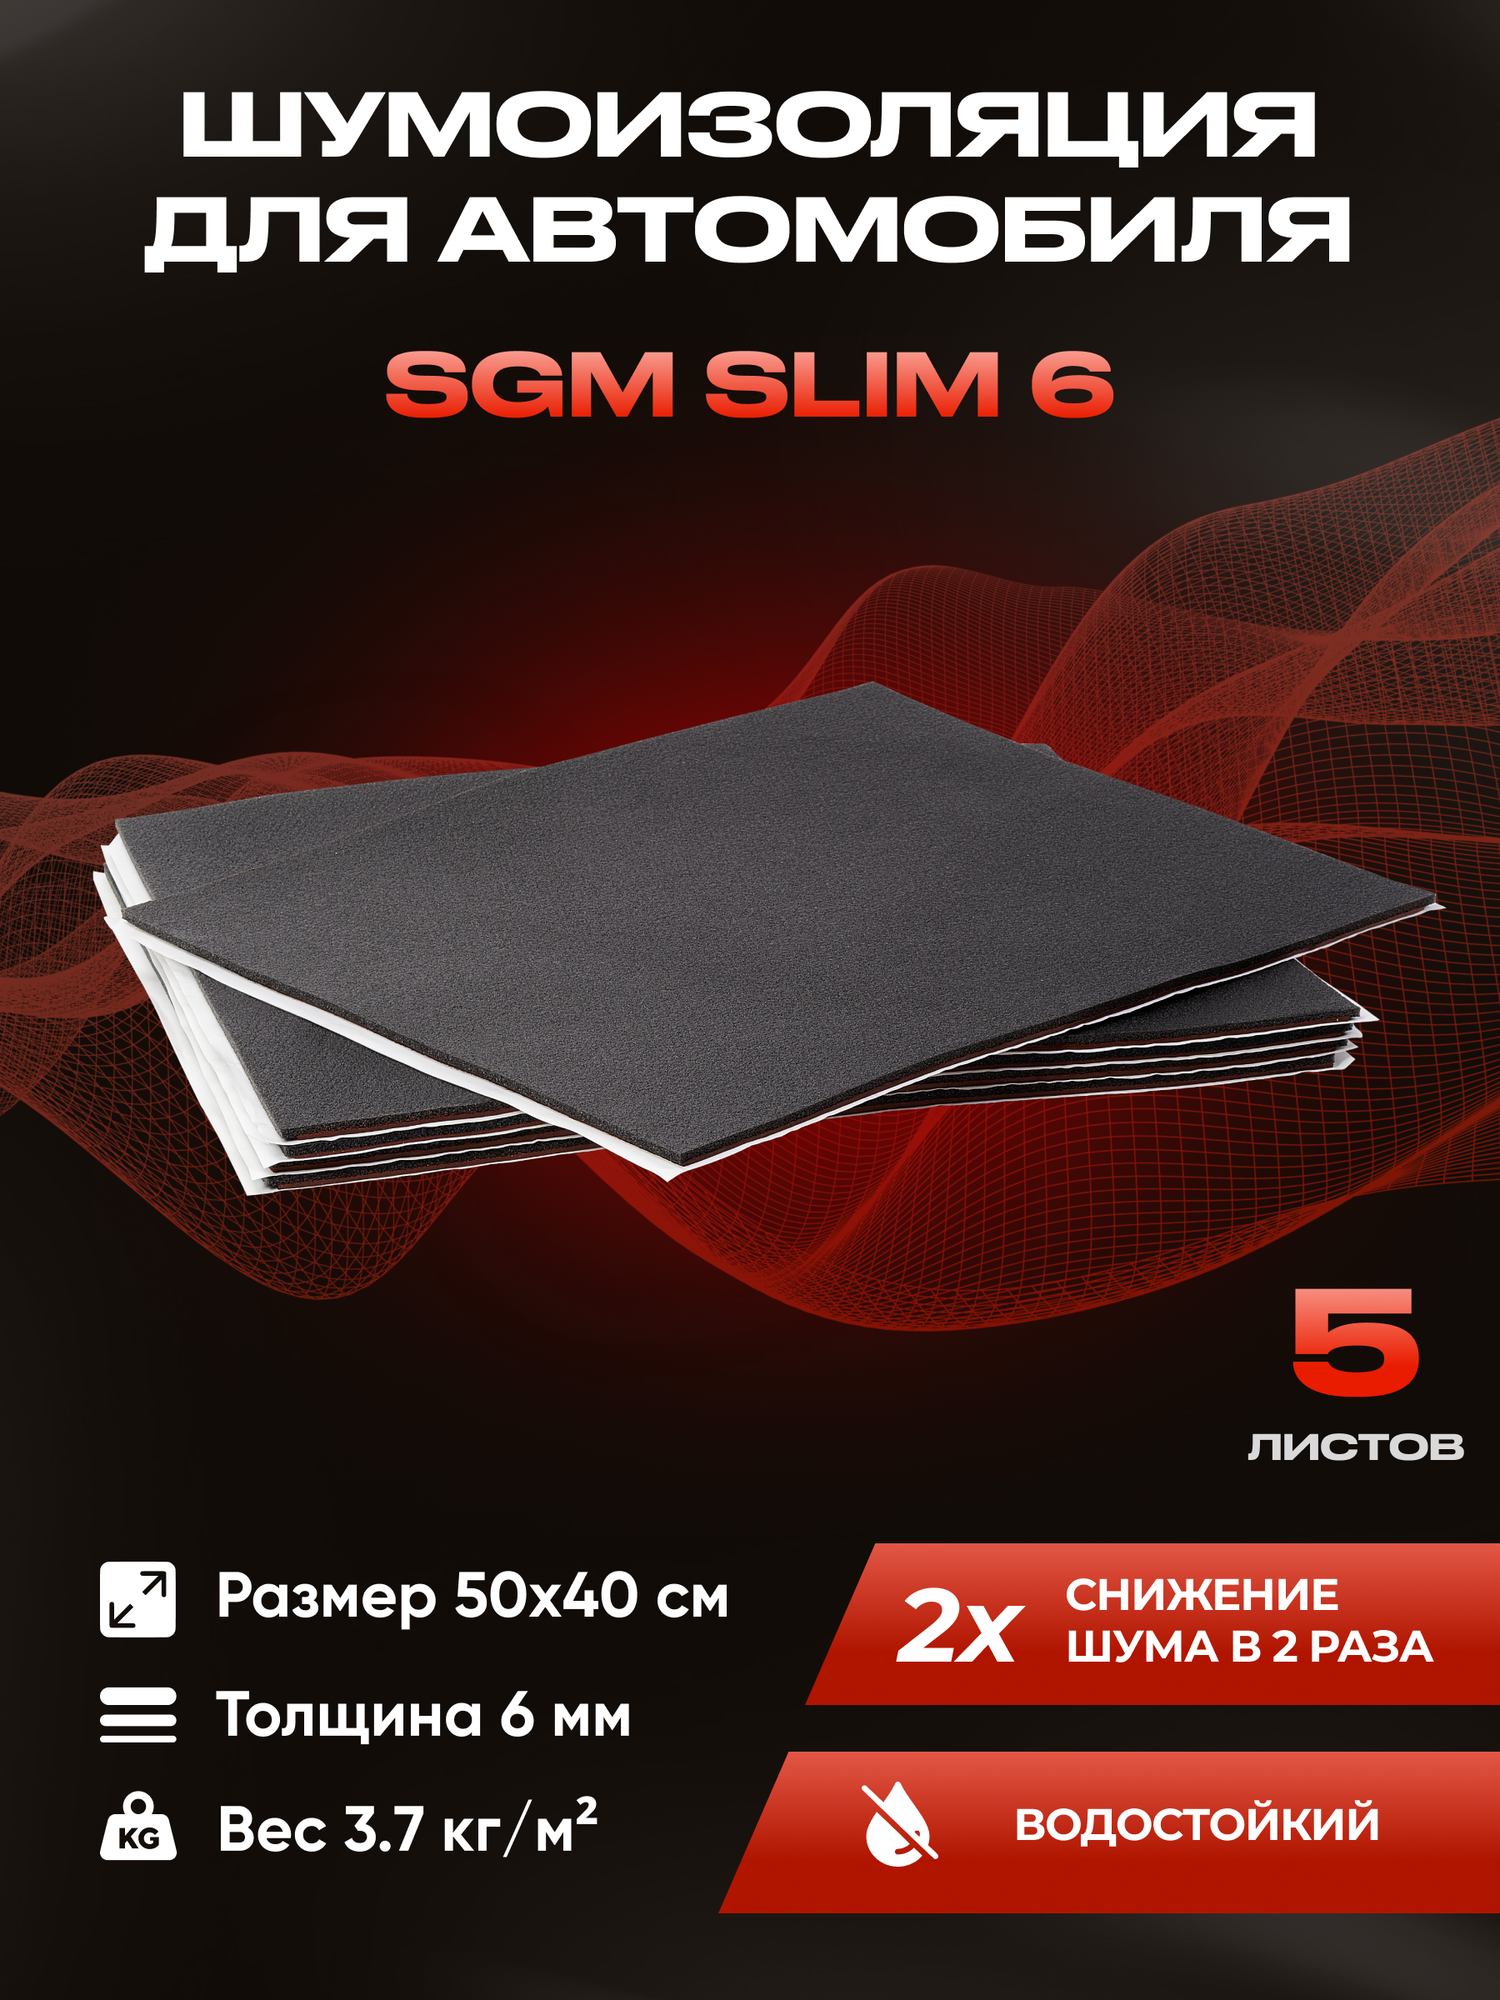 Шумоизоляция для автомобиля SGM Slim 6 5 листов /Набор влагостойкой звукоизоляции с теплоизолятором/комплект самоклеящаяся шумка для авто